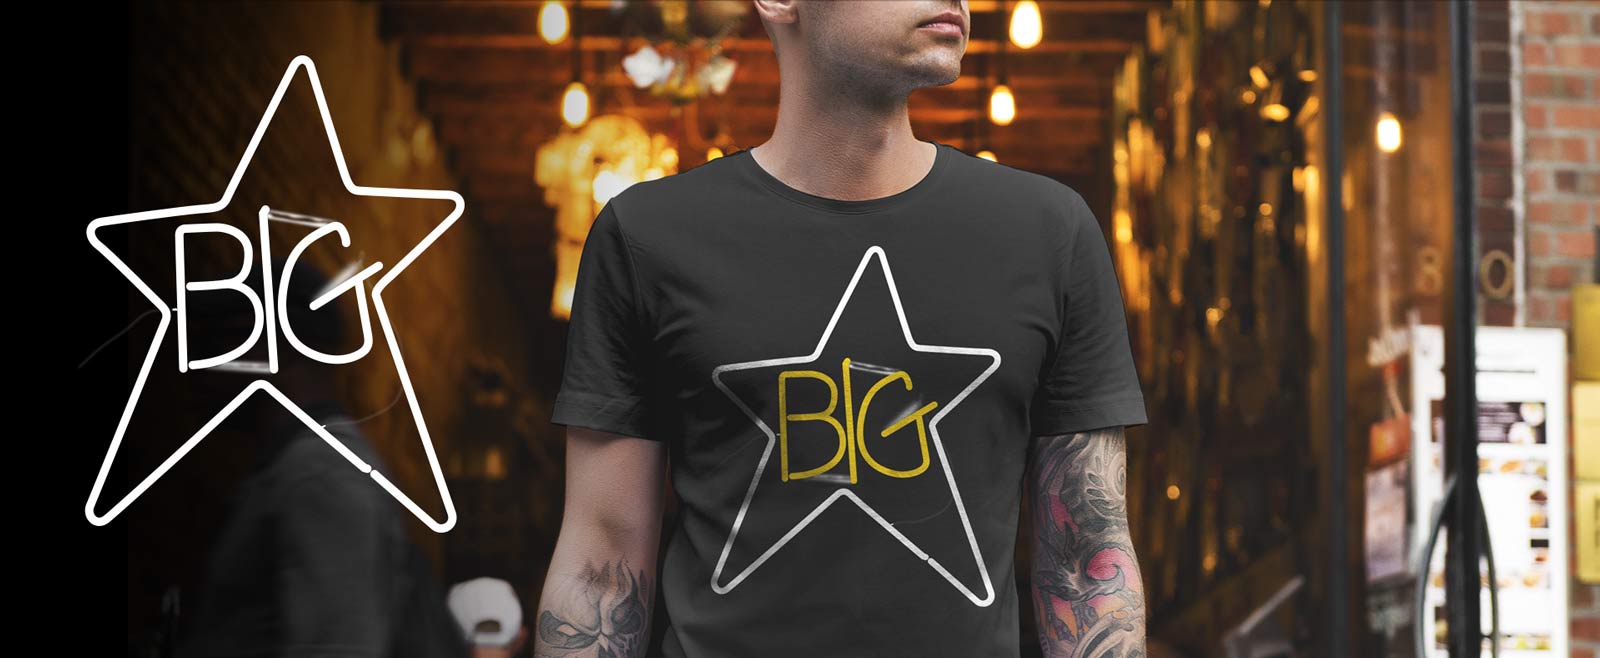 Big Star first record black t-shirt men